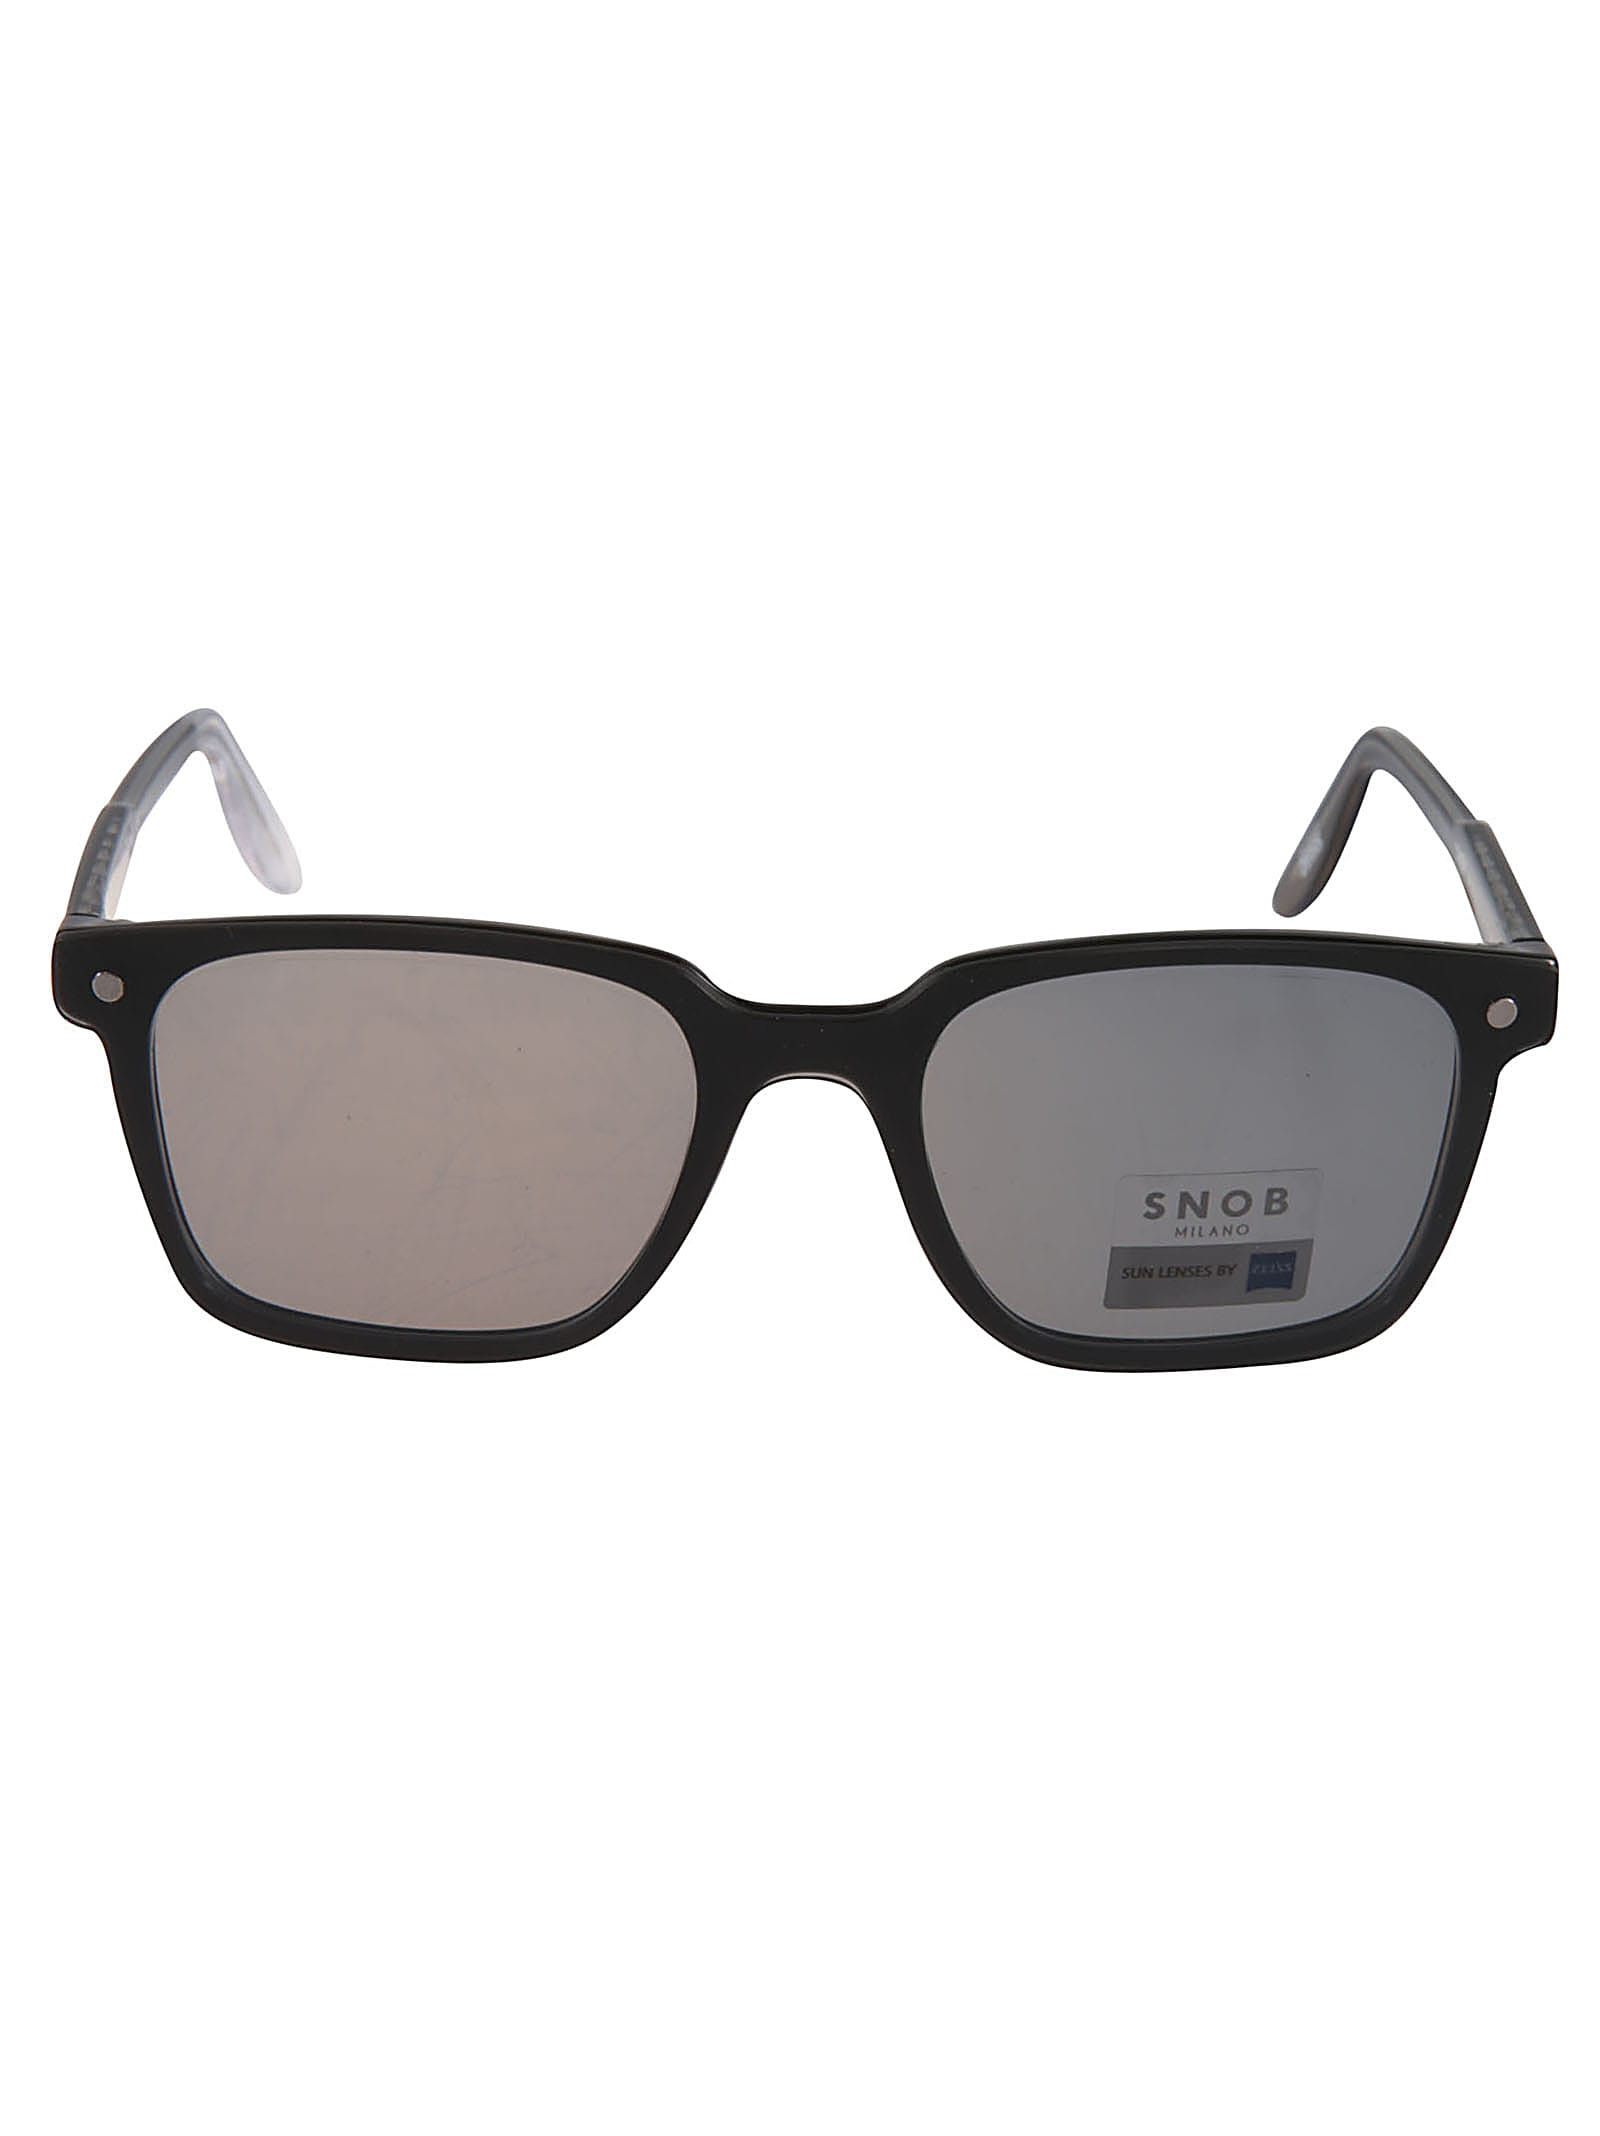 Snob Milano Square Frame Classic Sunglasses